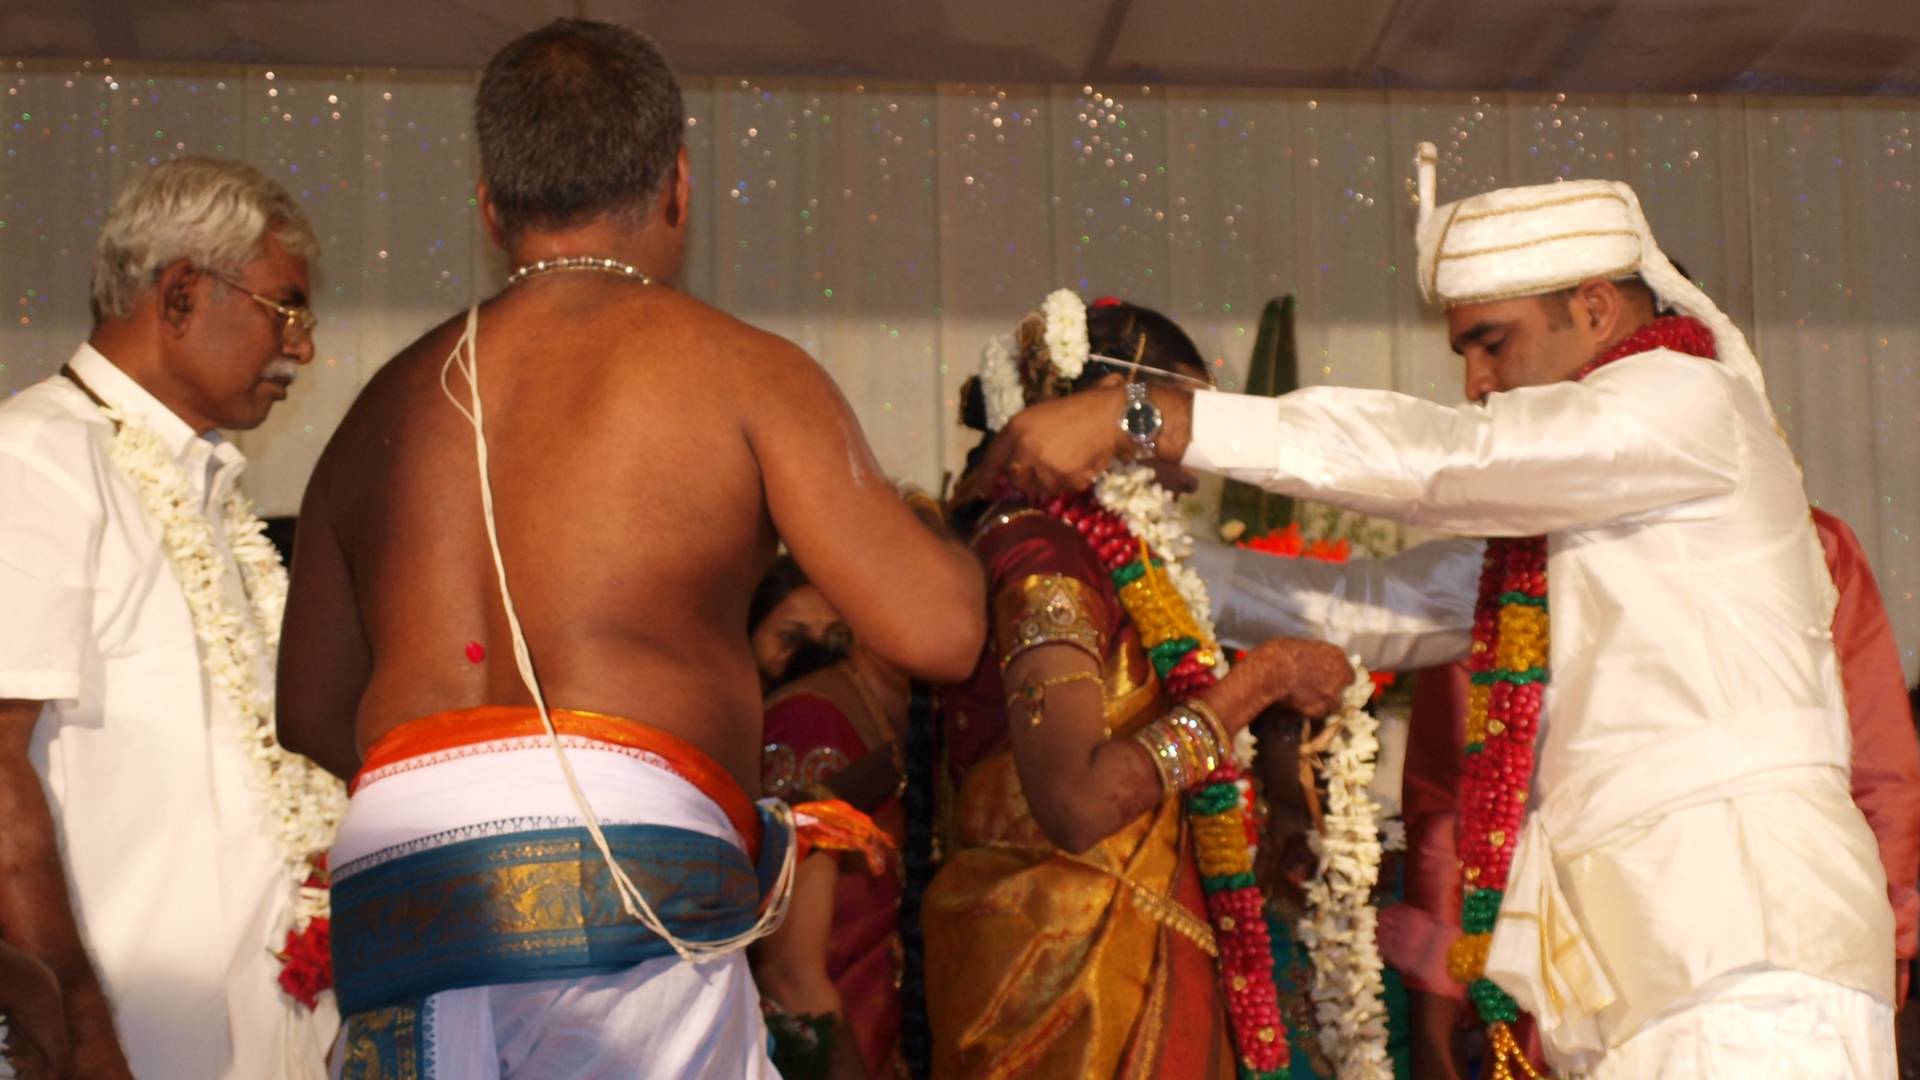 Beograđanin na tradicionalnoj indijskoj svadbi: Okrenuo sam list banane i uvredio domaćicu